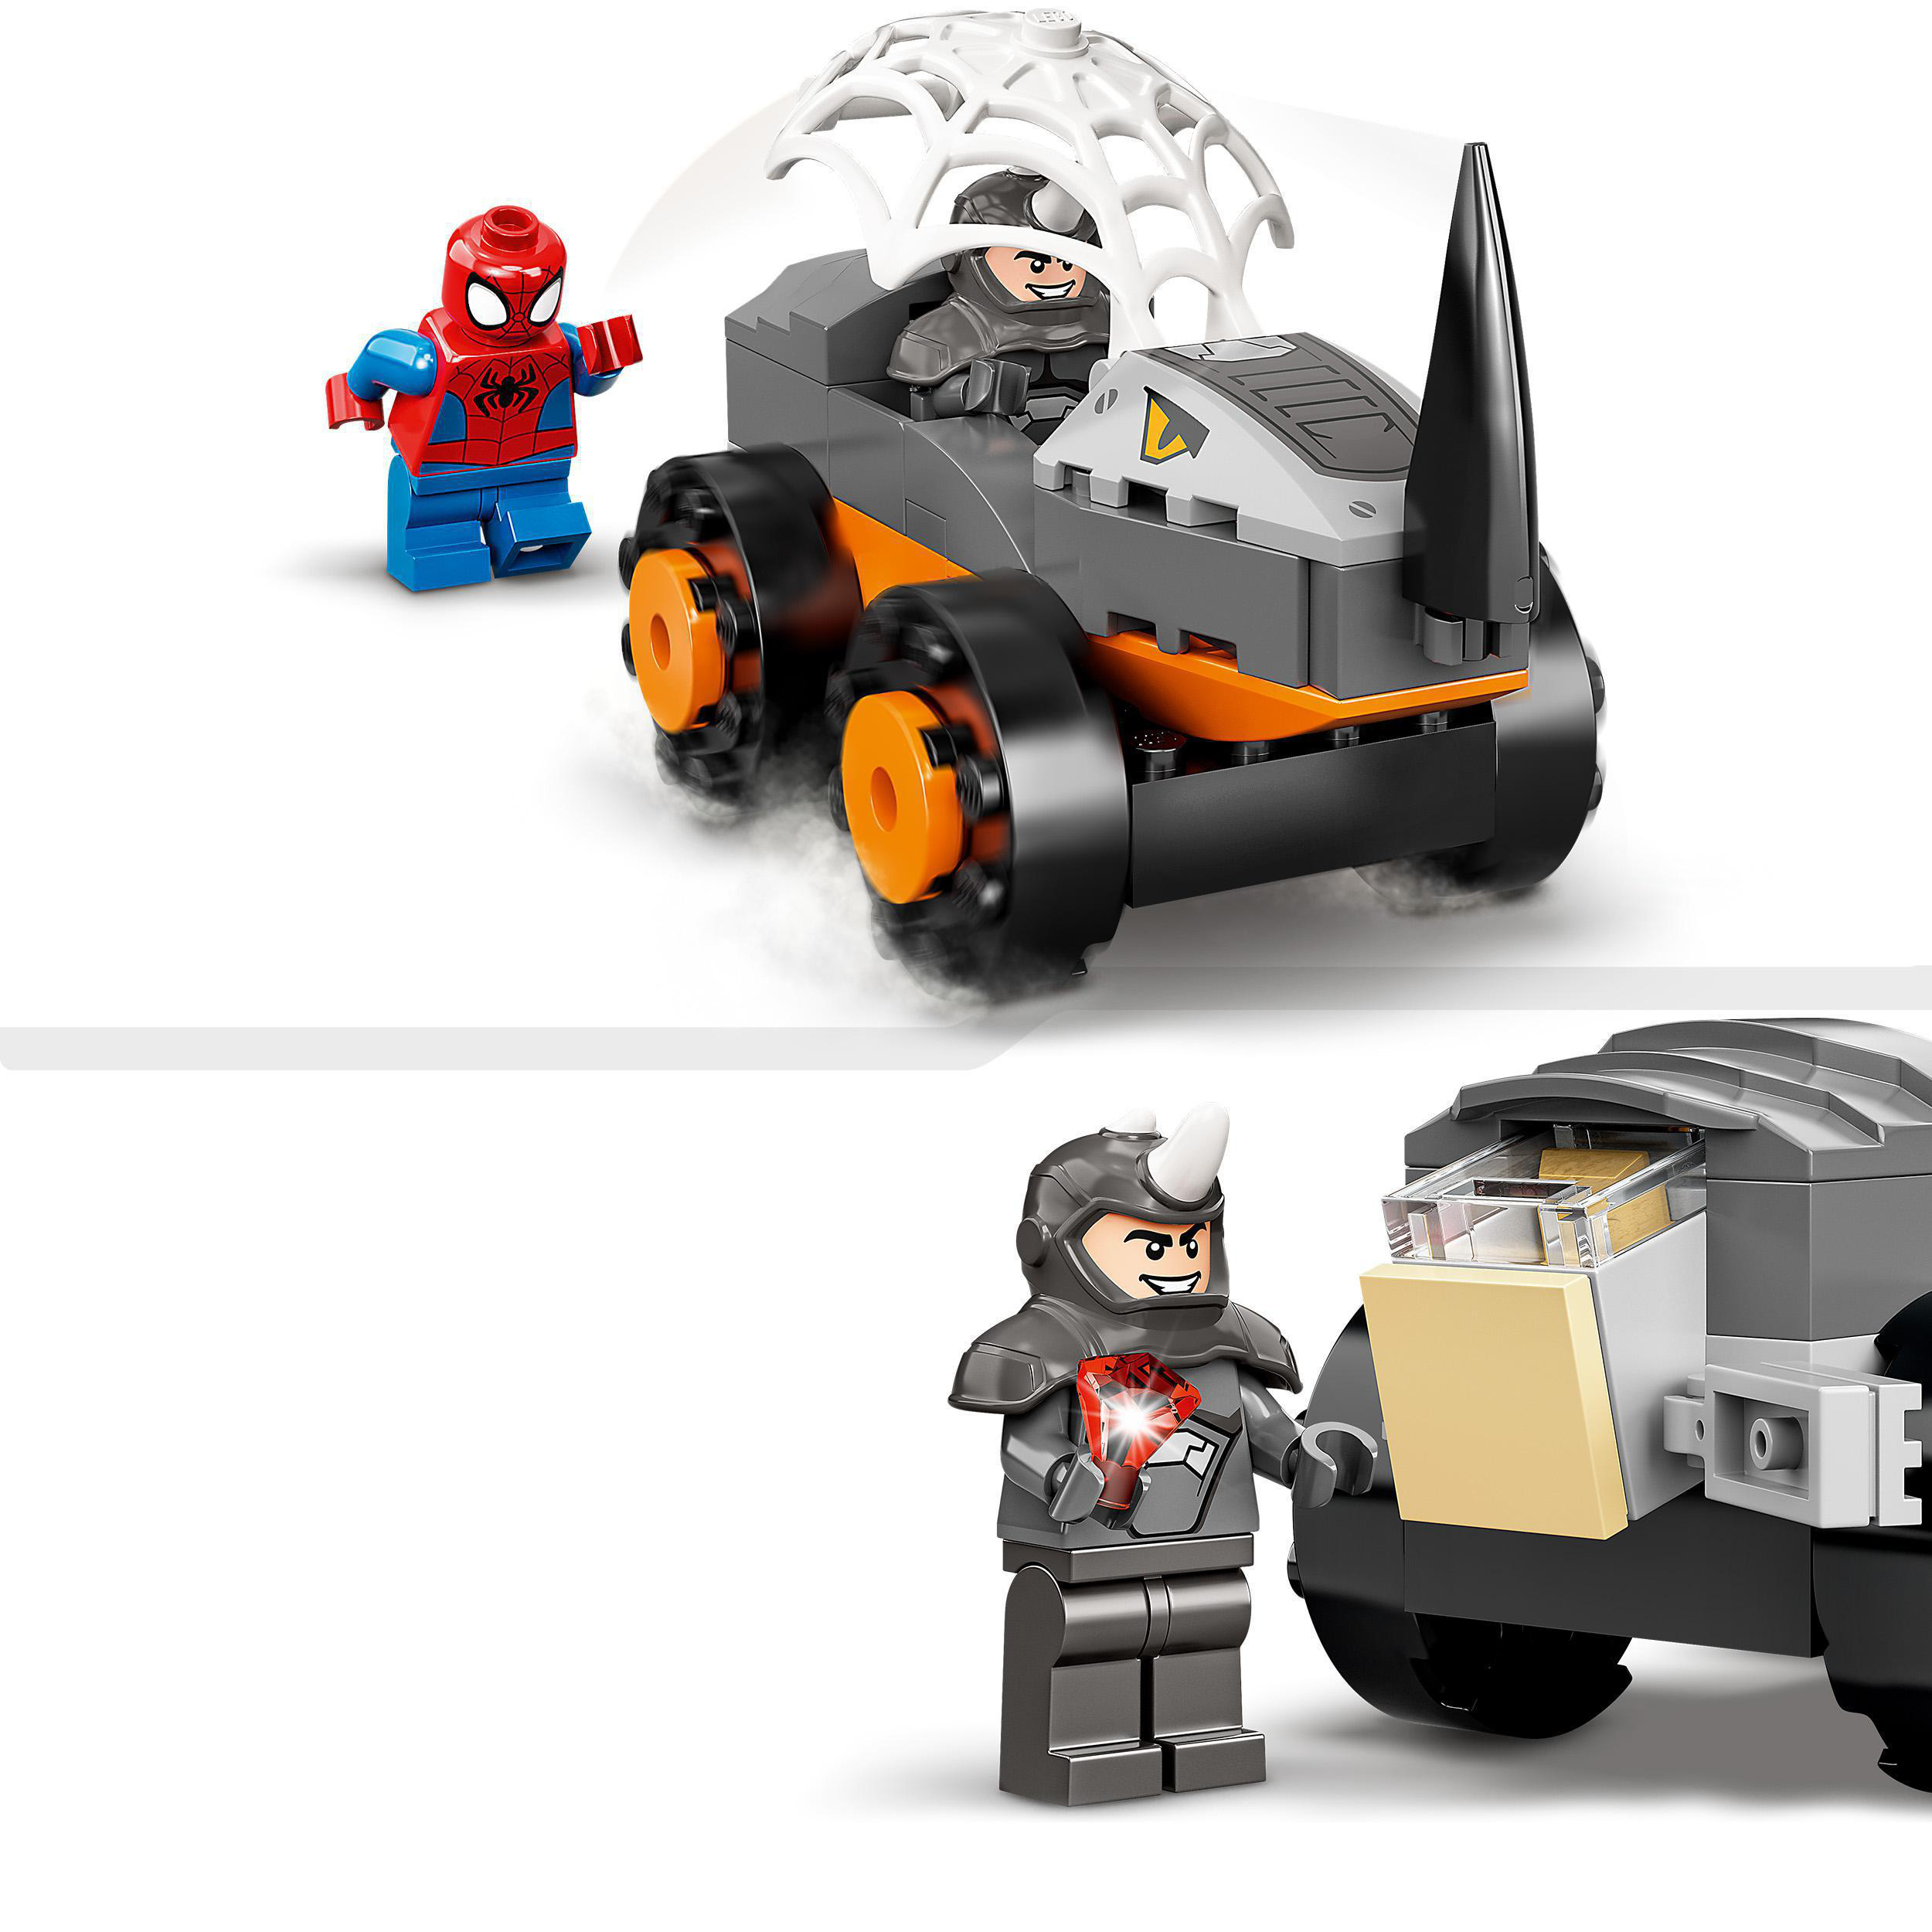 LEGO und Truck-Duell Bausatz, 10782 Mehrfarbig Hulks Marvel Rhinos